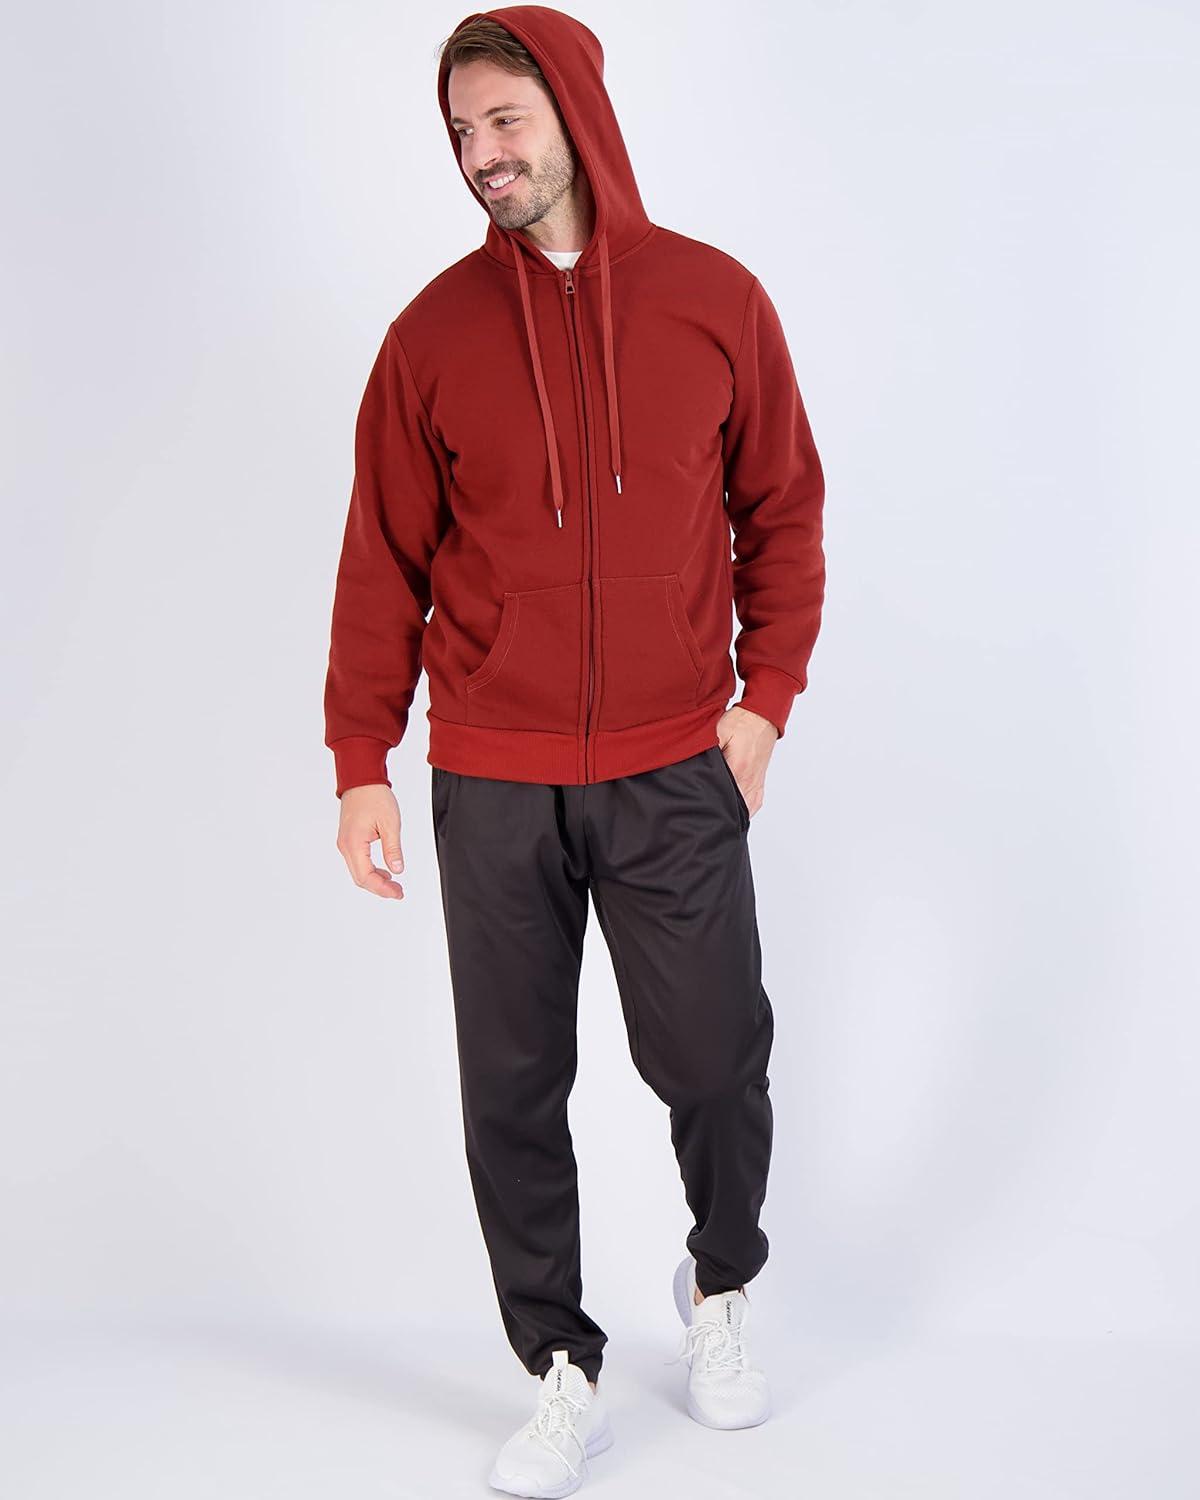 3 Pack: Men s Fleece Long Sleeve Full Zip Hoodie - Athletic Sweatshirt  Jacket (Available in Big & Tall) Standard X-Large Set 5